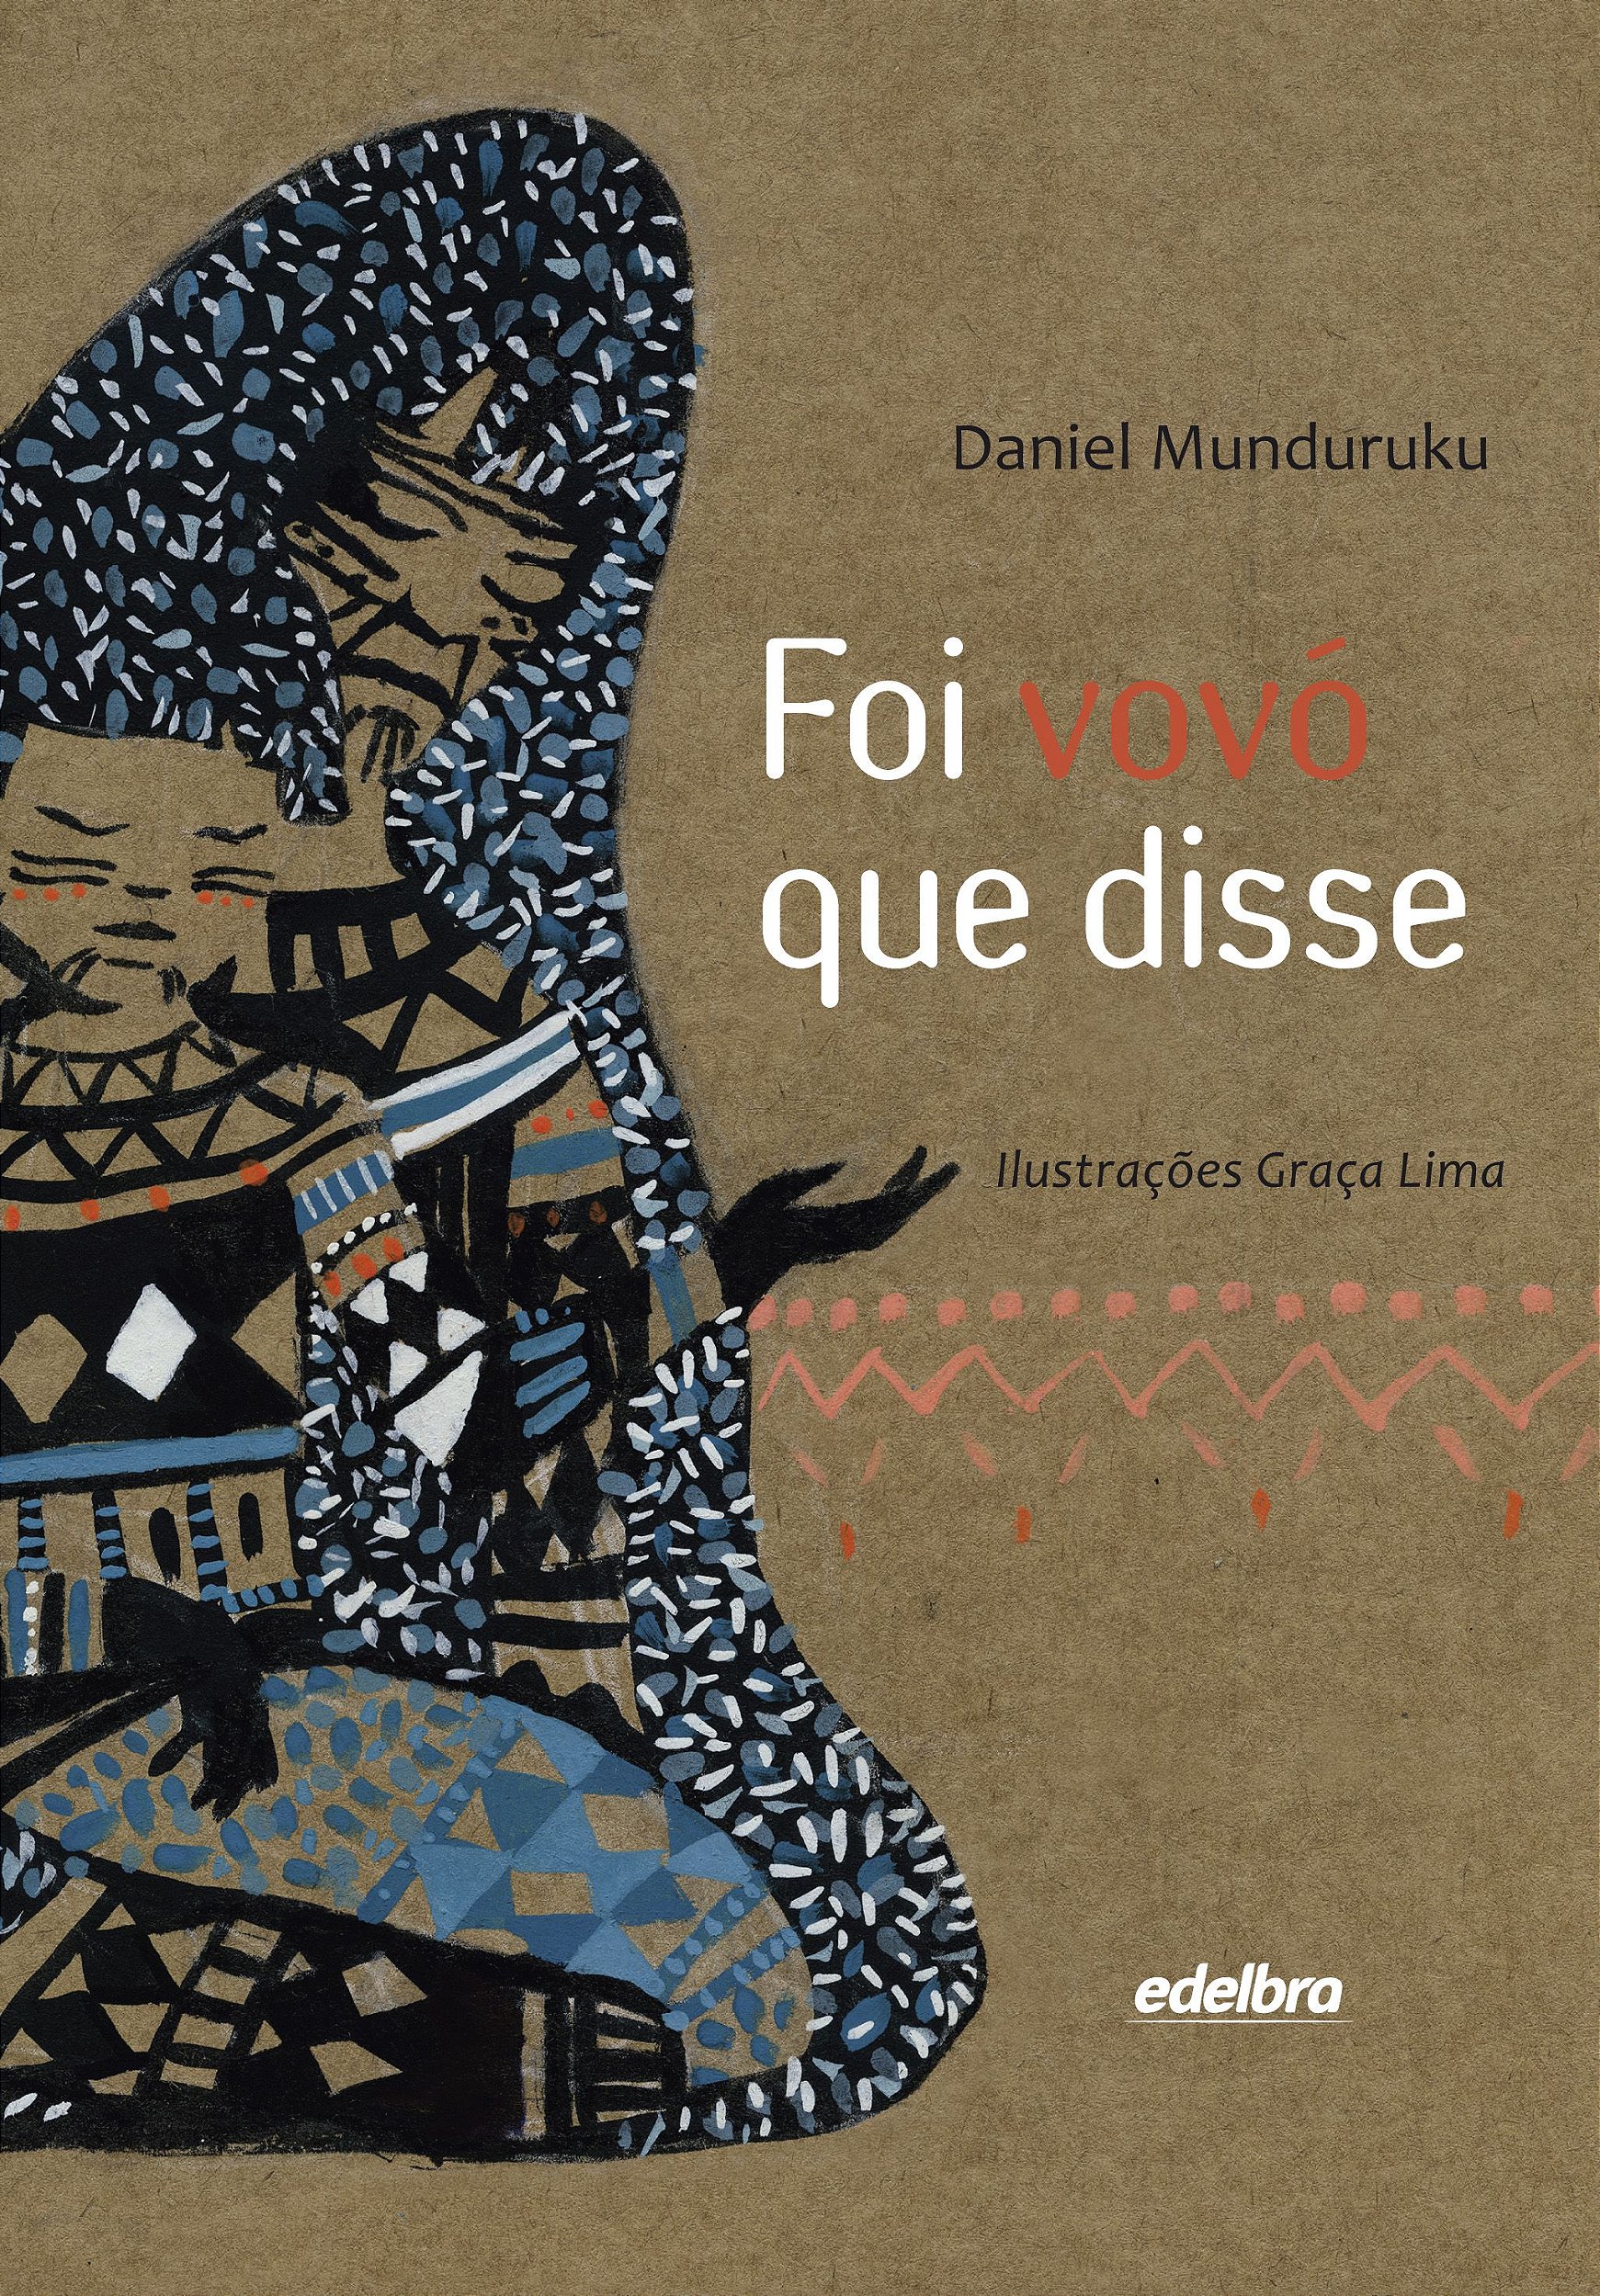 Edição Nº 27 - Belém, 2015 by Associação Brasileira de Literatura